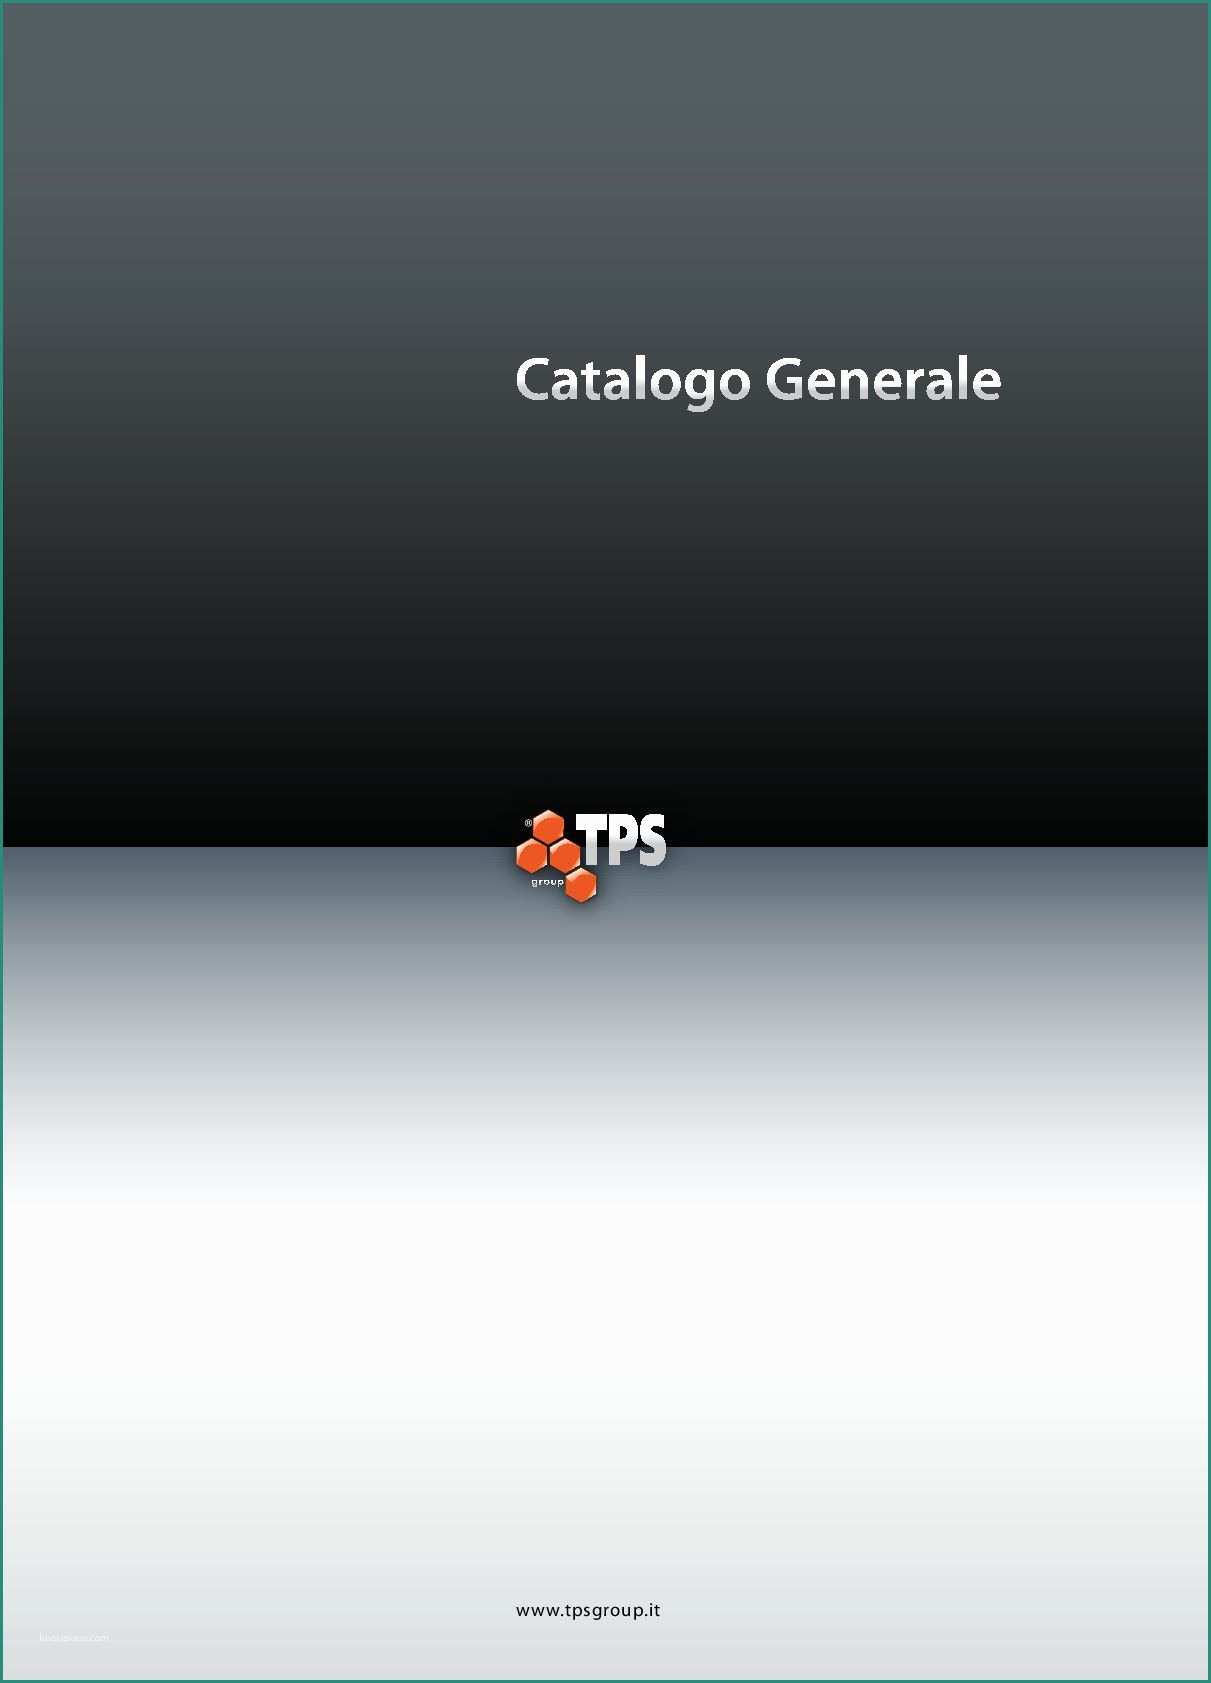 Copri Bidoni Spazzatura E Tpsgroup Catalogo Generale 2009 by Tpsgroup S P A Antinfortunistica